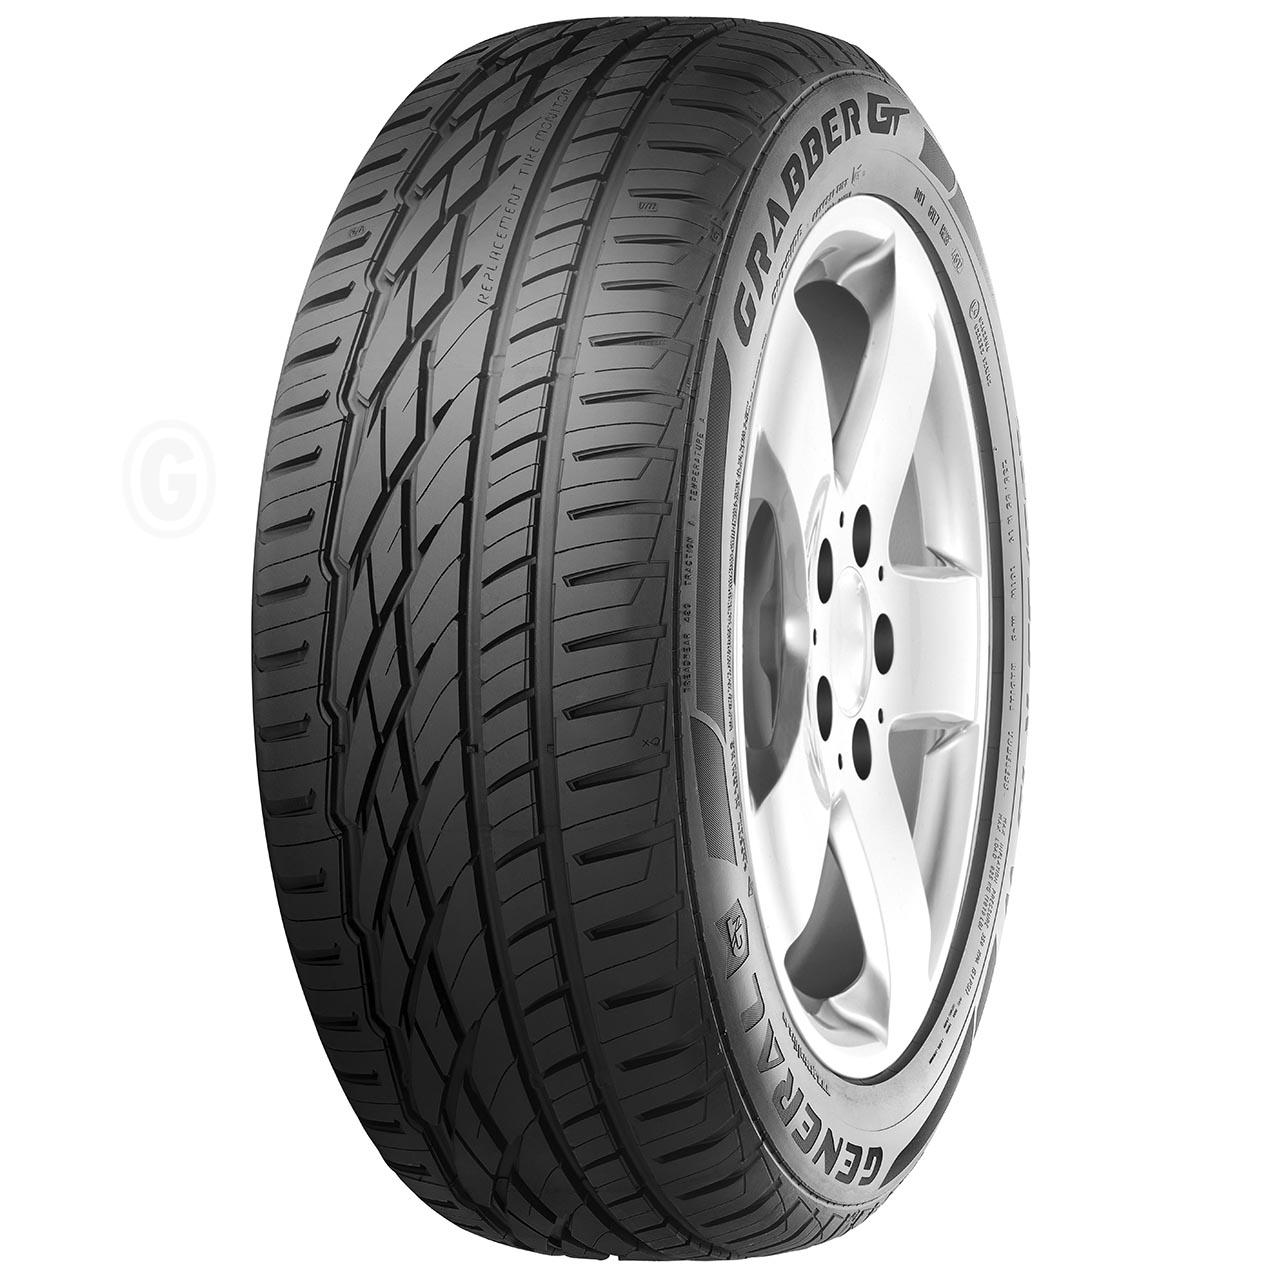 General Tire Grabber GT 235/60R16 100V FR